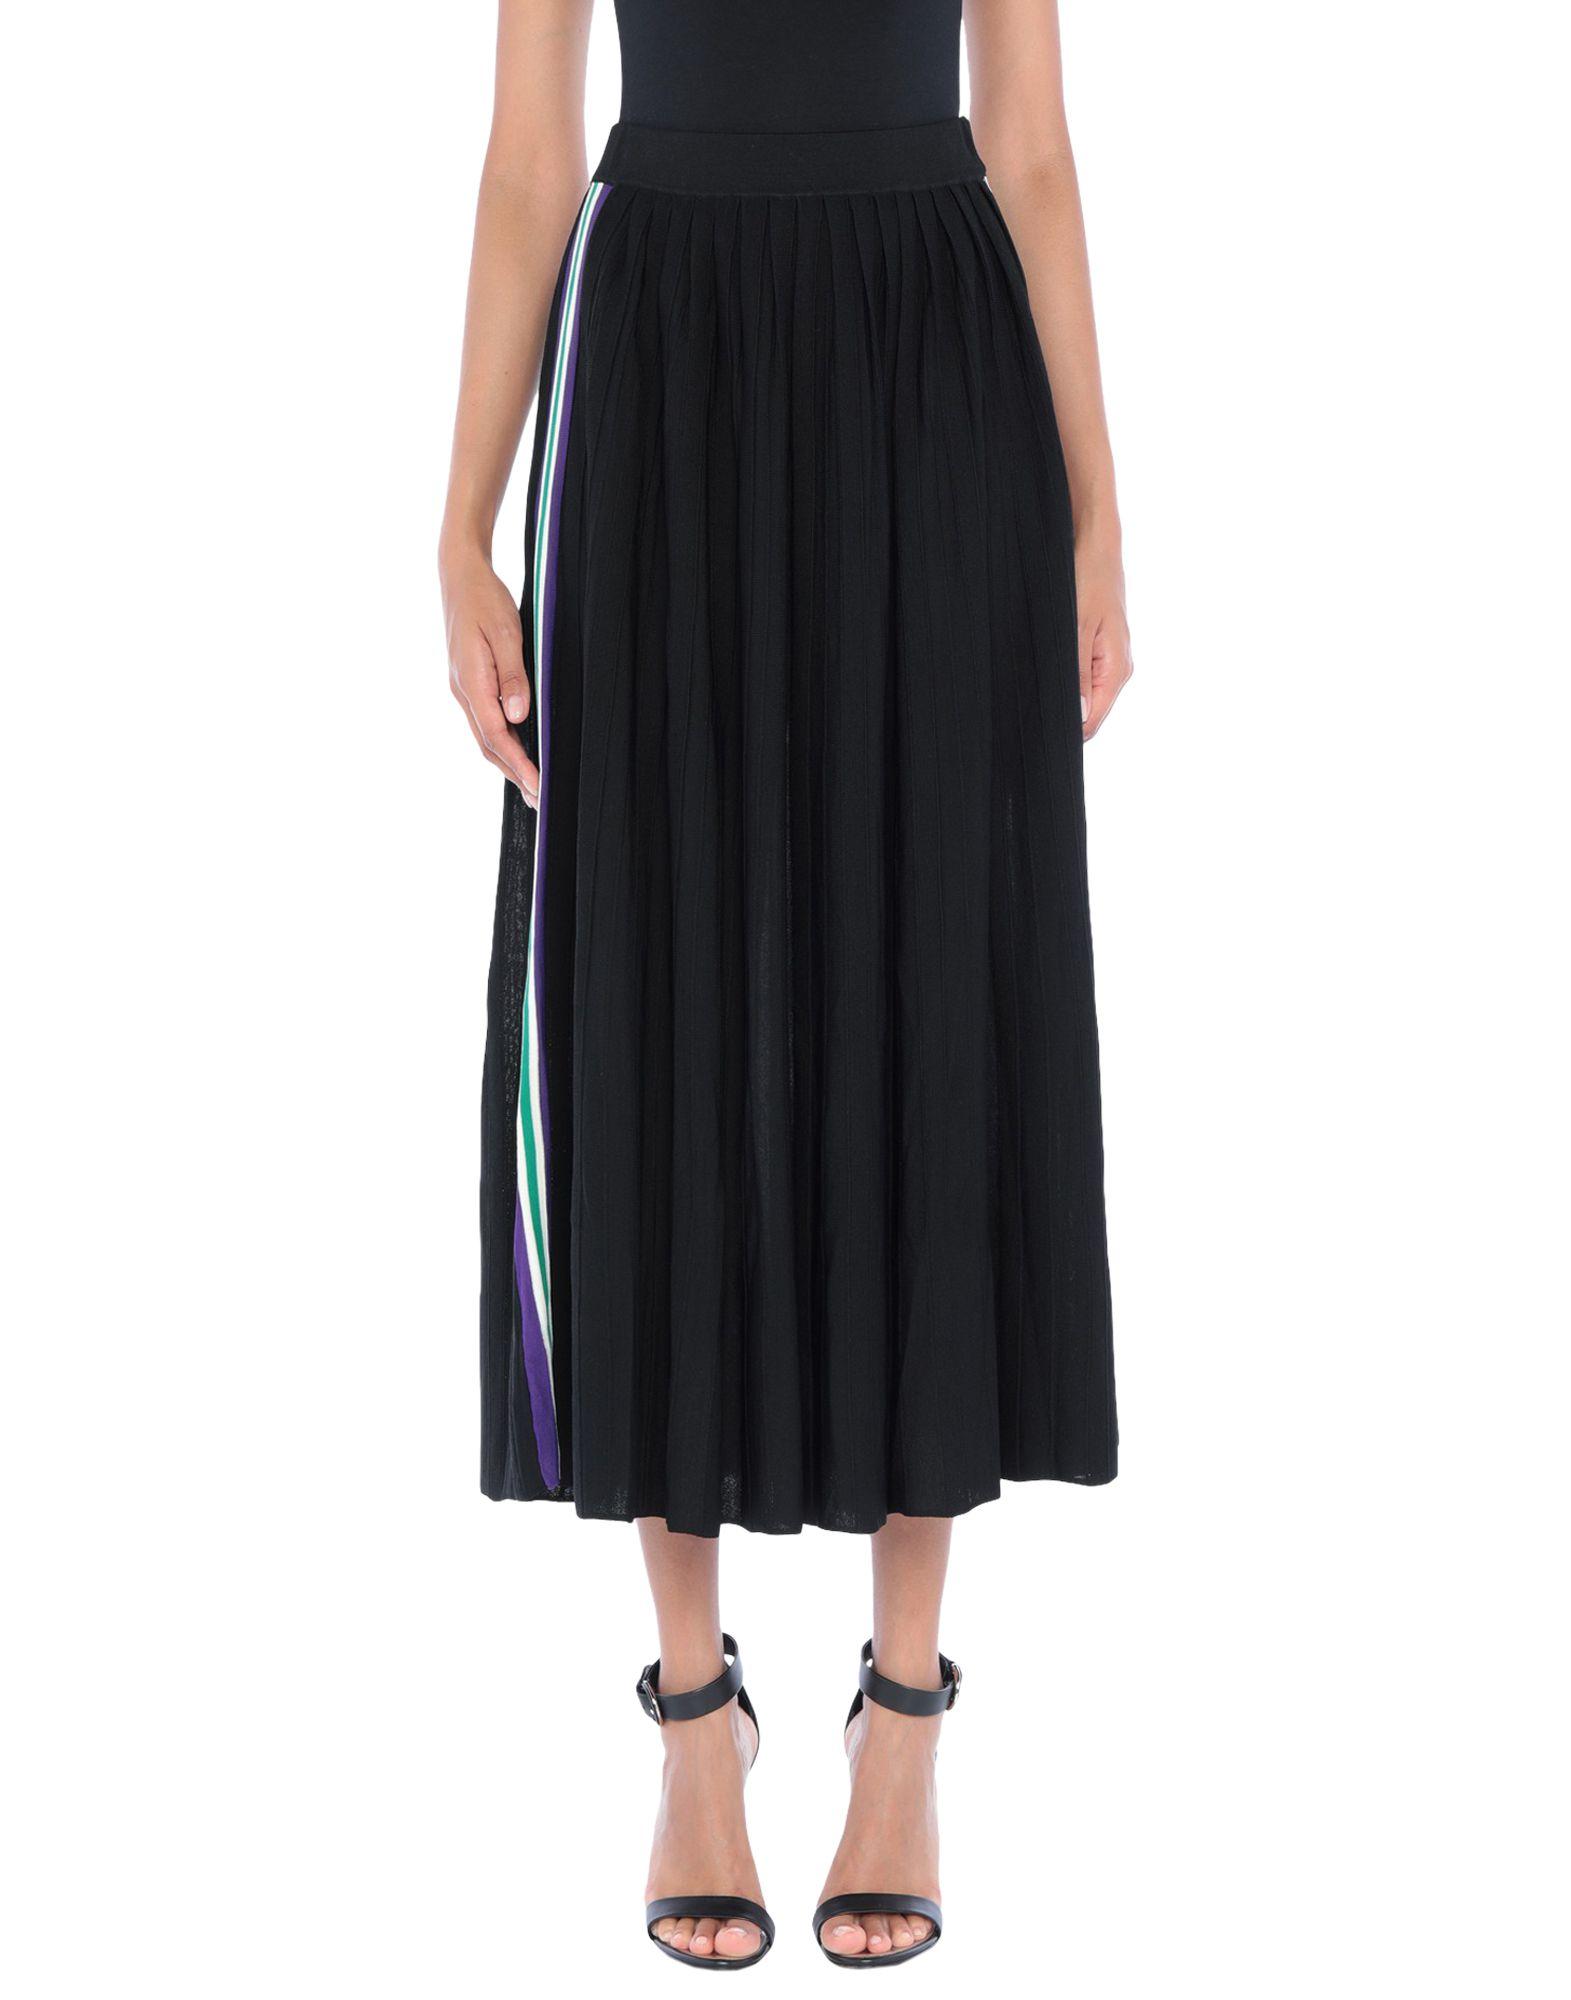 Sandro Synthetic 3/4 Length Skirt in Black - Lyst